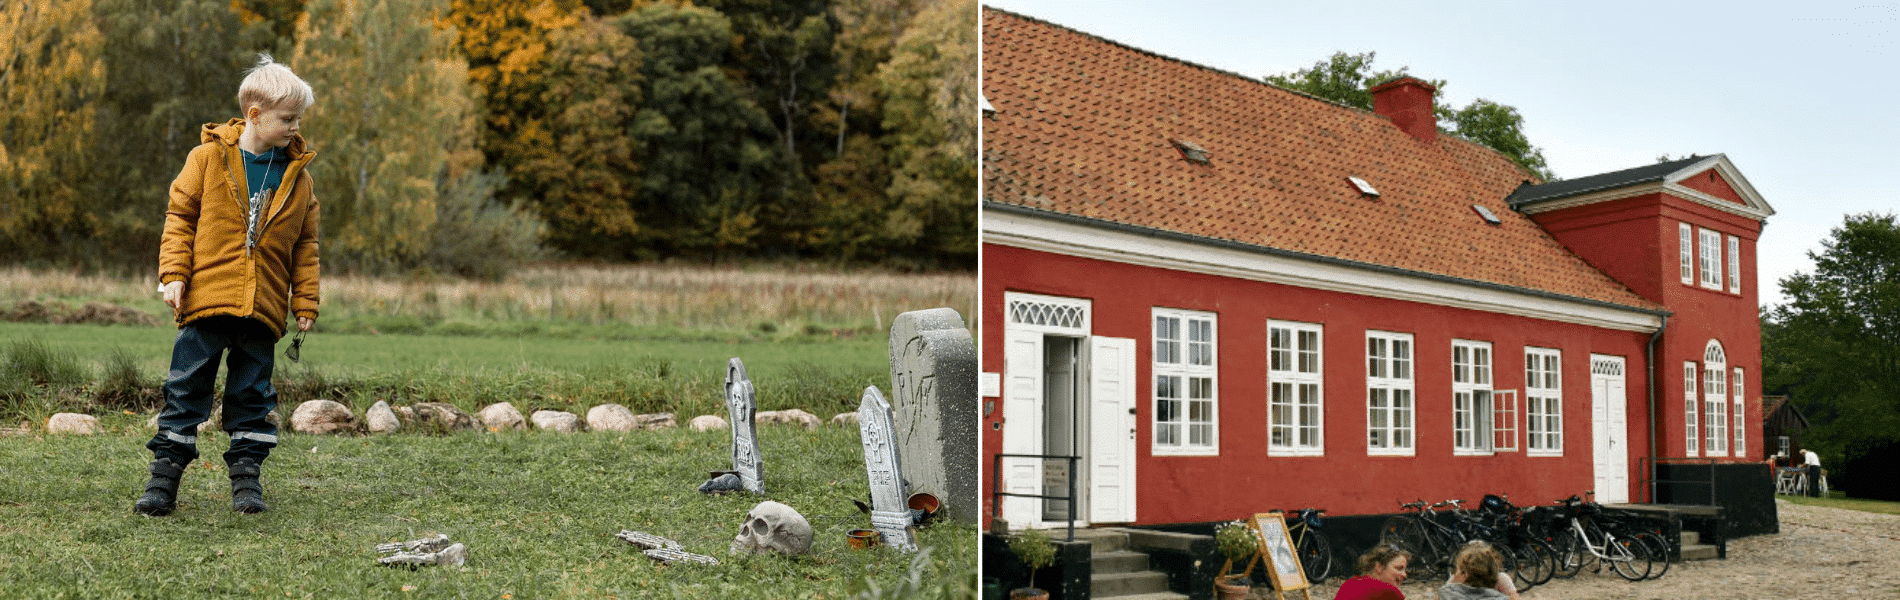 Frederikssund museum efterårsferie i fjordlandet